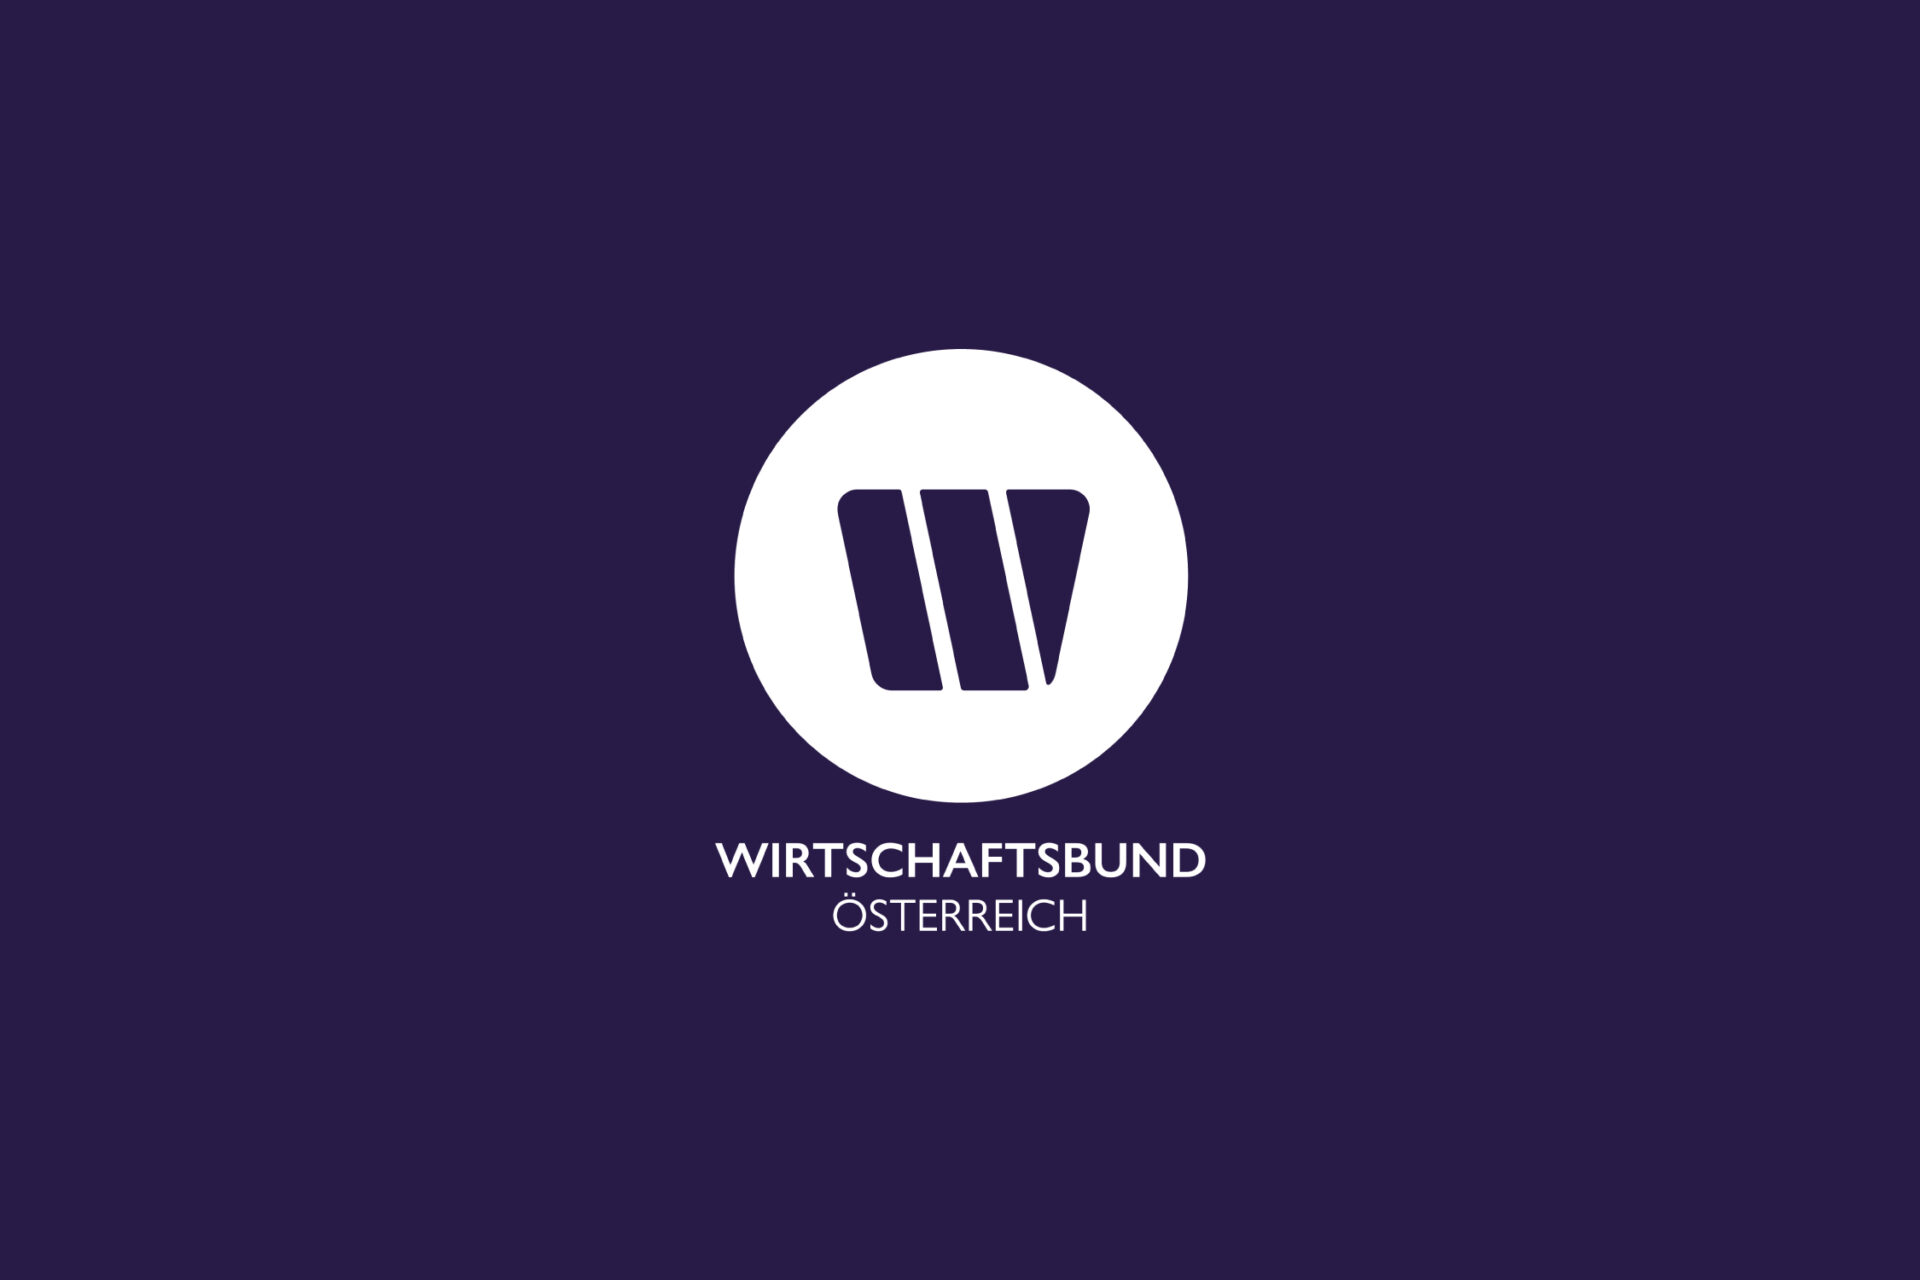 Das neue Wirtschaftsbund Logo in weißer Farbe auf violettem Hintergrund.